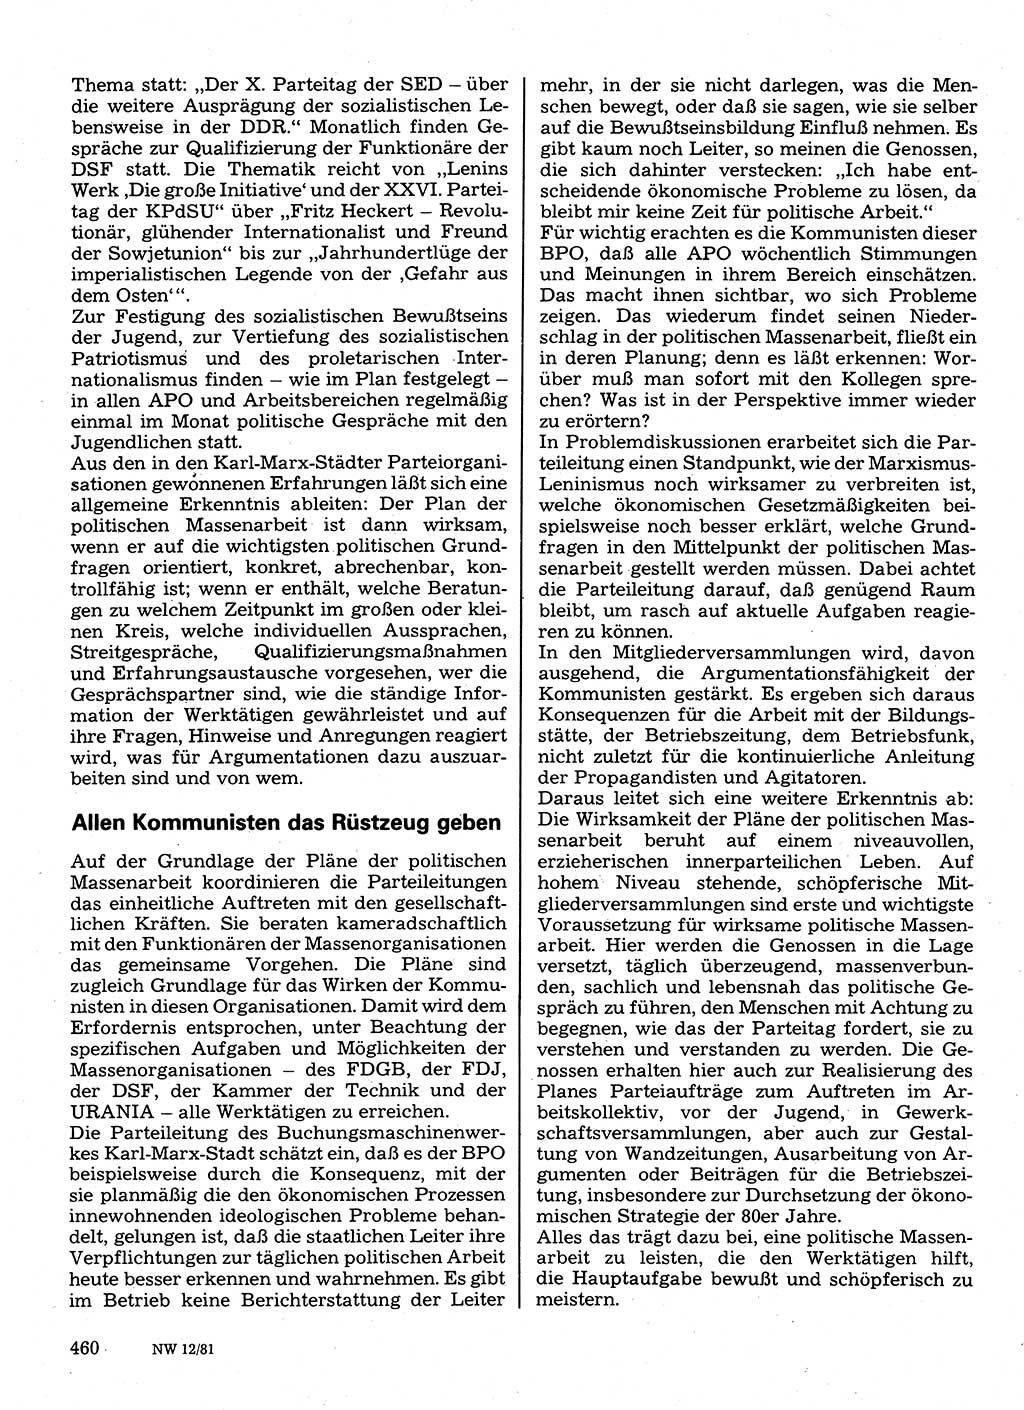 Neuer Weg (NW), Organ des Zentralkomitees (ZK) der SED (Sozialistische Einheitspartei Deutschlands) für Fragen des Parteilebens, 36. Jahrgang [Deutsche Demokratische Republik (DDR)] 1981, Seite 460 (NW ZK SED DDR 1981, S. 460)